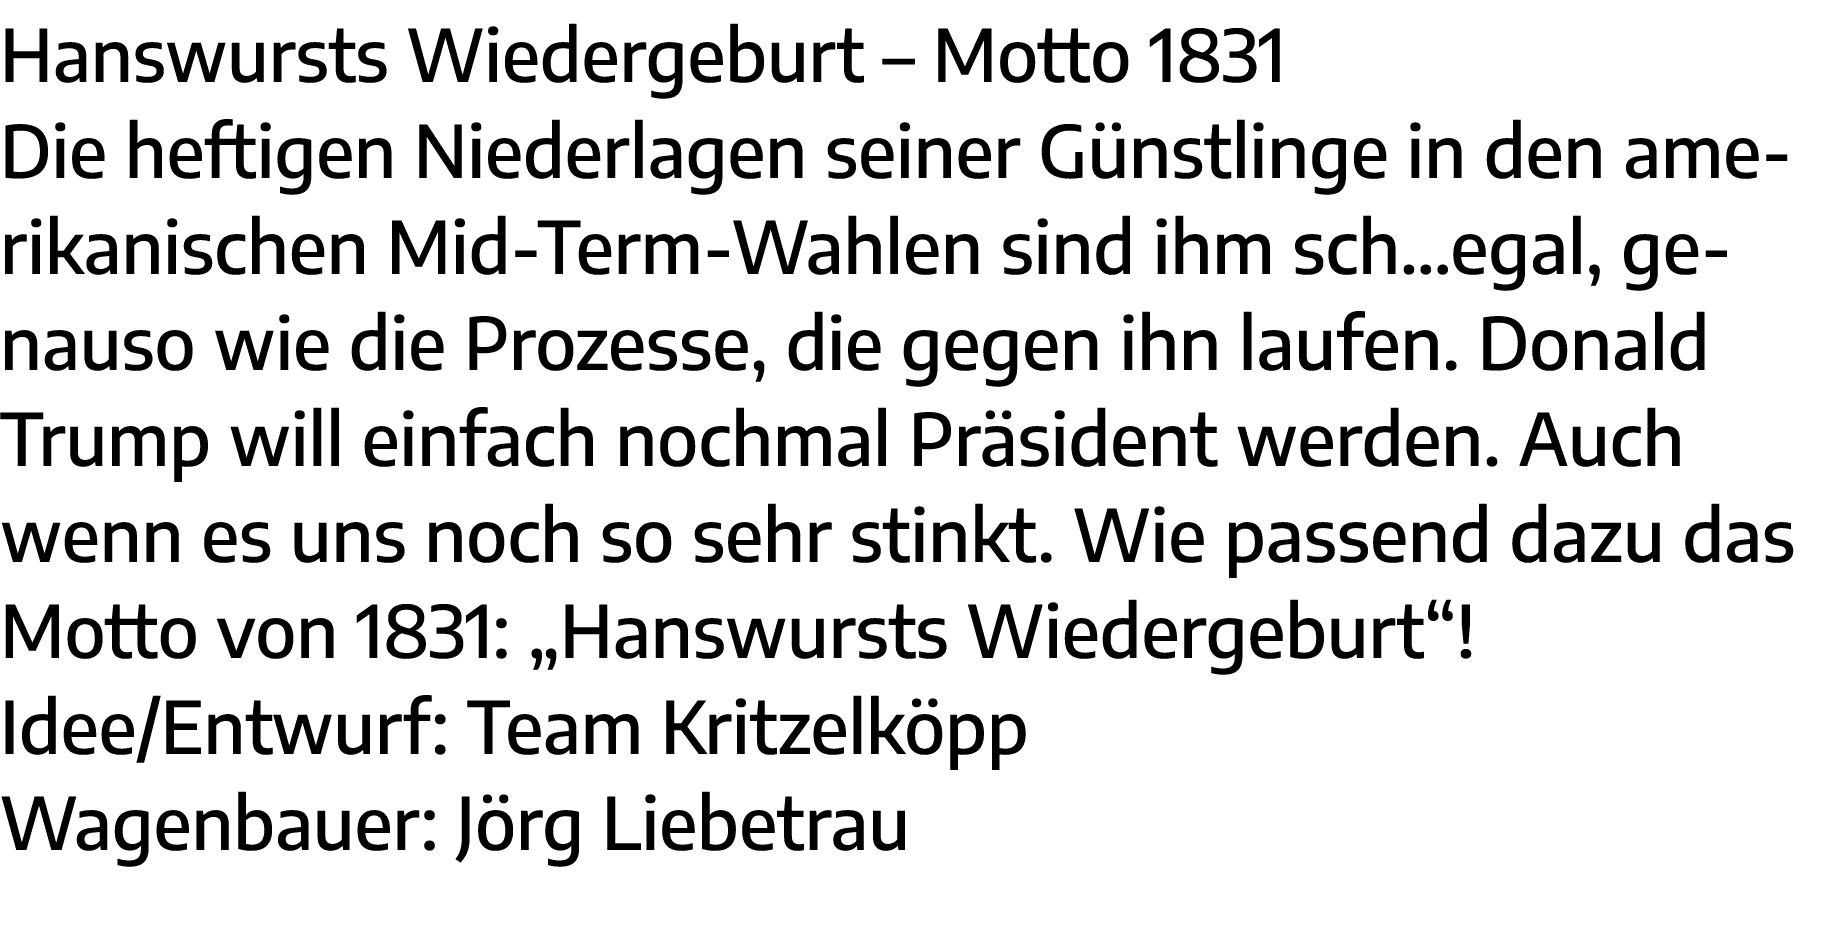 Hanswursts Wiedergeburt   Motto 1831 Die heftigen Niederlagen seiner Günstlinge in den amerikanischen Mid-Term-Wahlen   